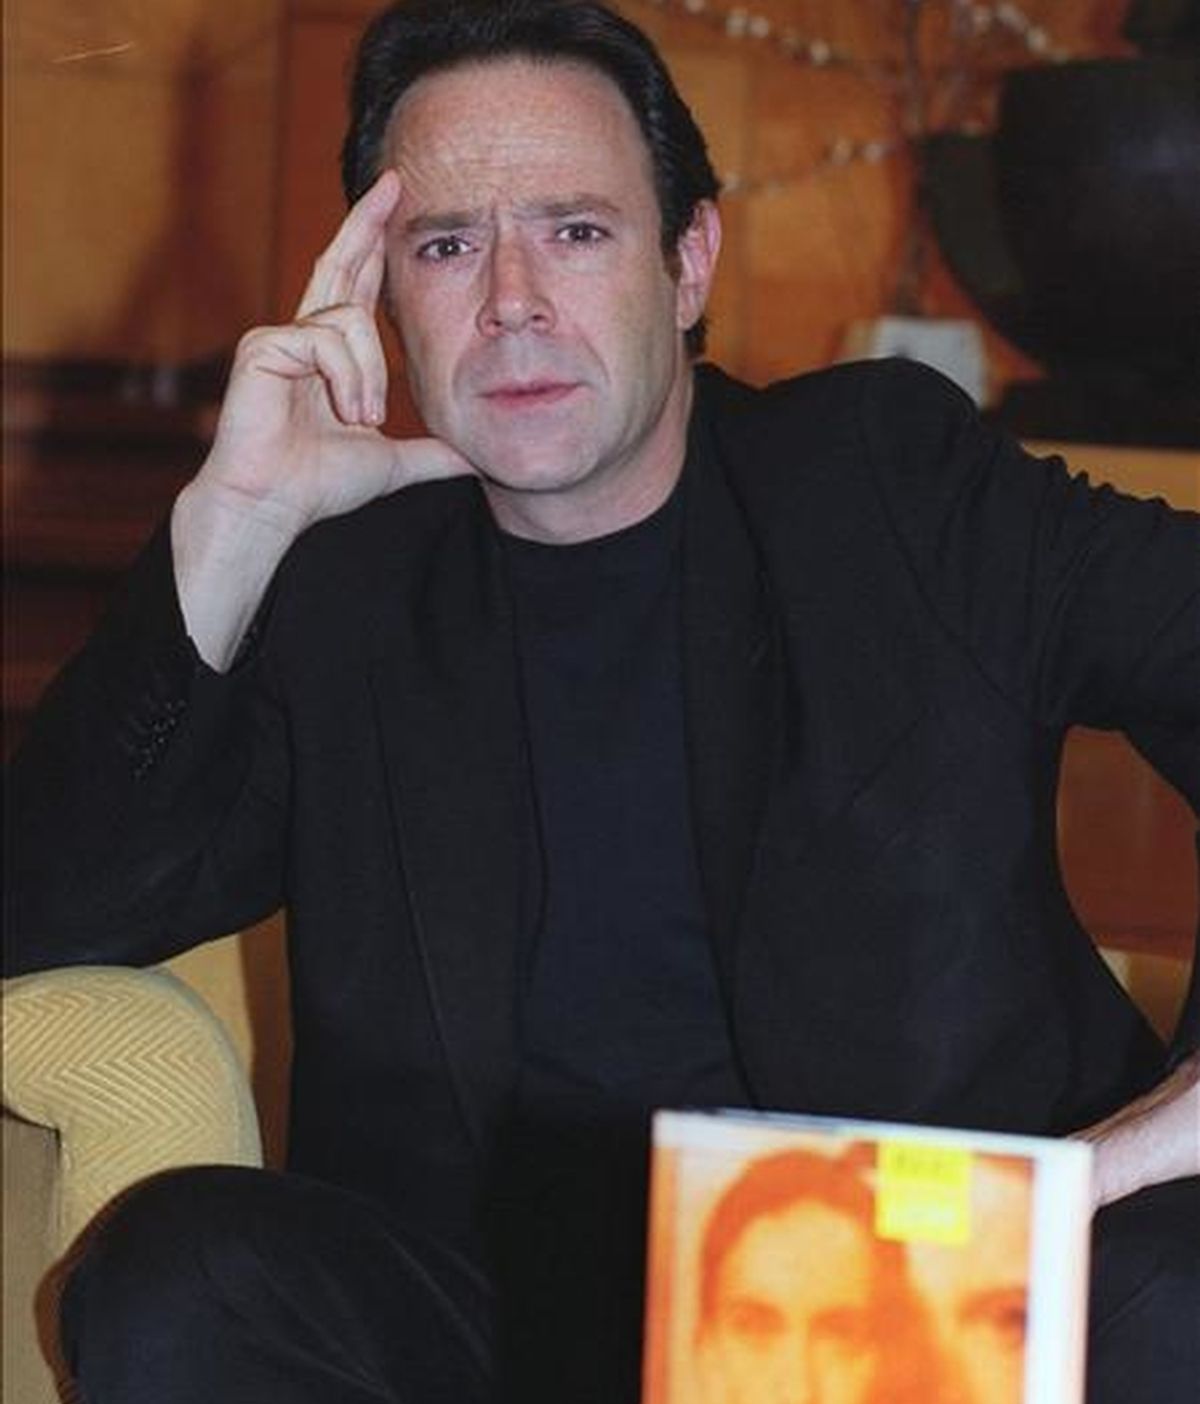 El escritor francés Marc Levy durante la presentación de "Ojalá fuera cierto", su primera novela, en una  entrevista concedida a EFE en semptiembre de 2000. EFE/Archivo